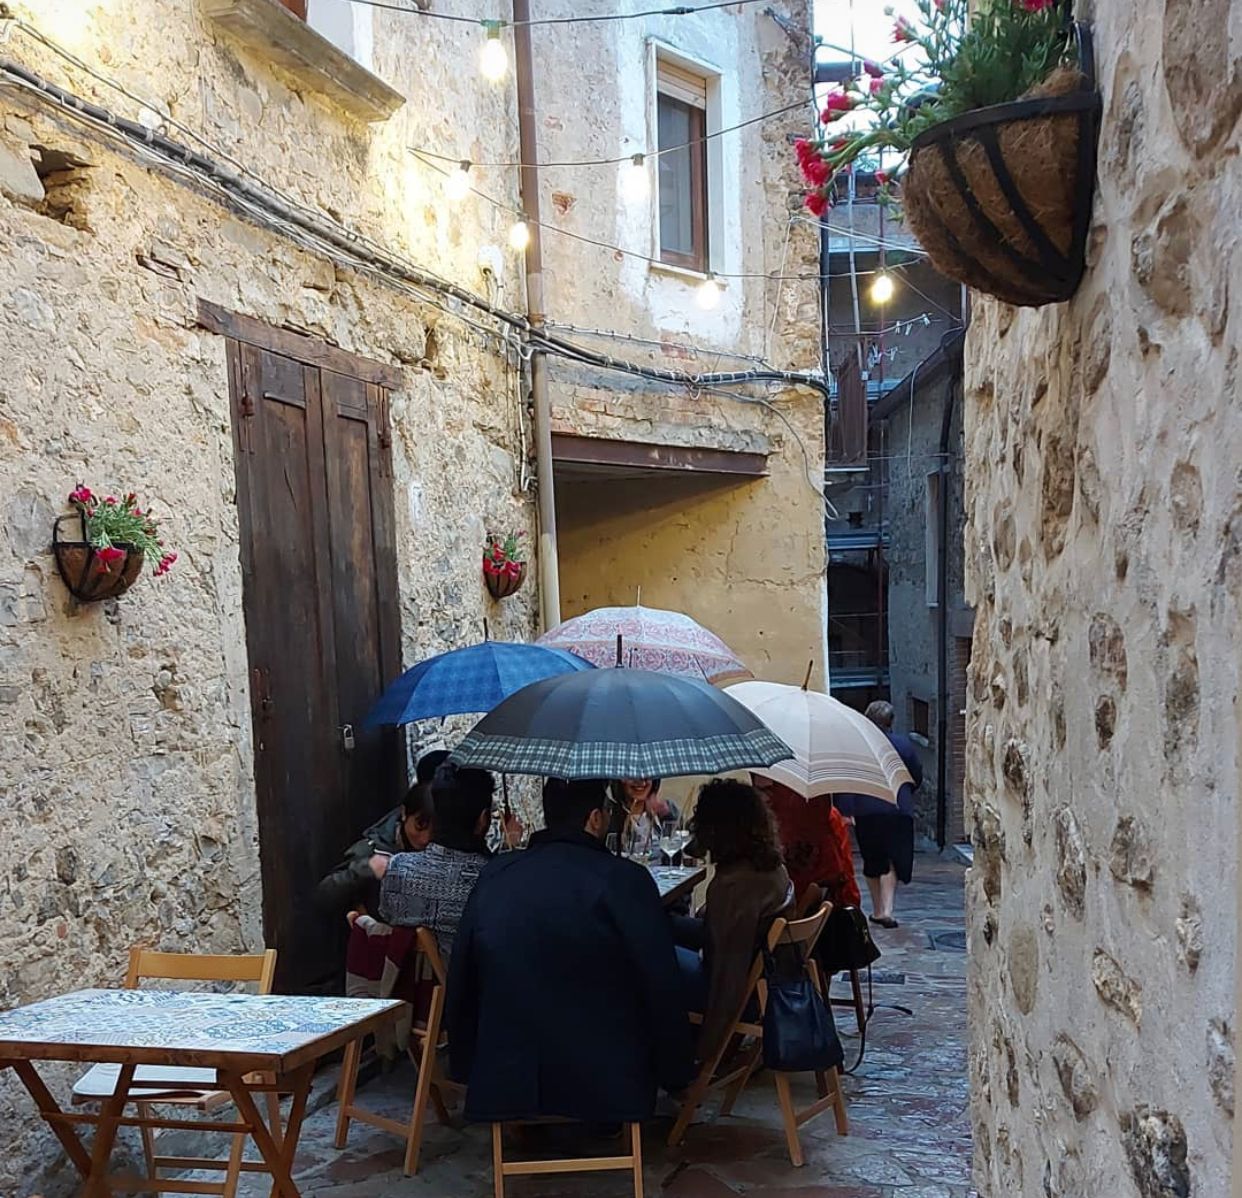 Cilento, al ristorante con l’ombrello: lo scatto simbolo delle restrizioni covid